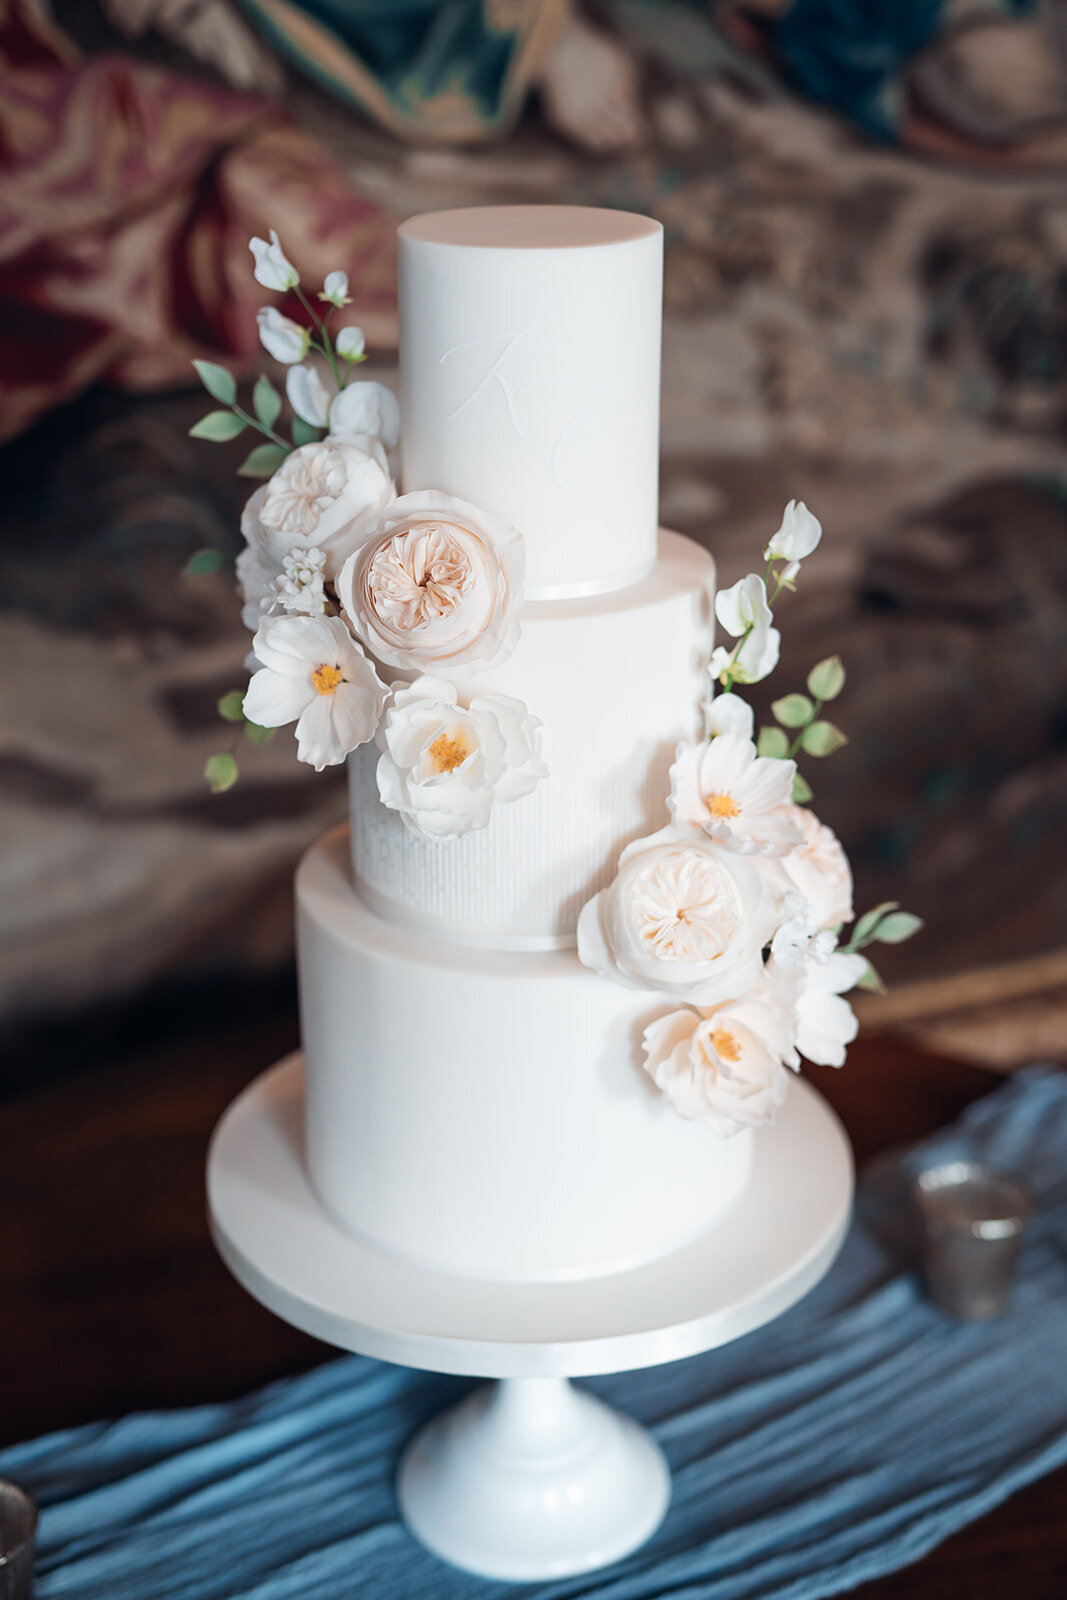 bespoke-wedding-cake-styled-with-pastel-blue